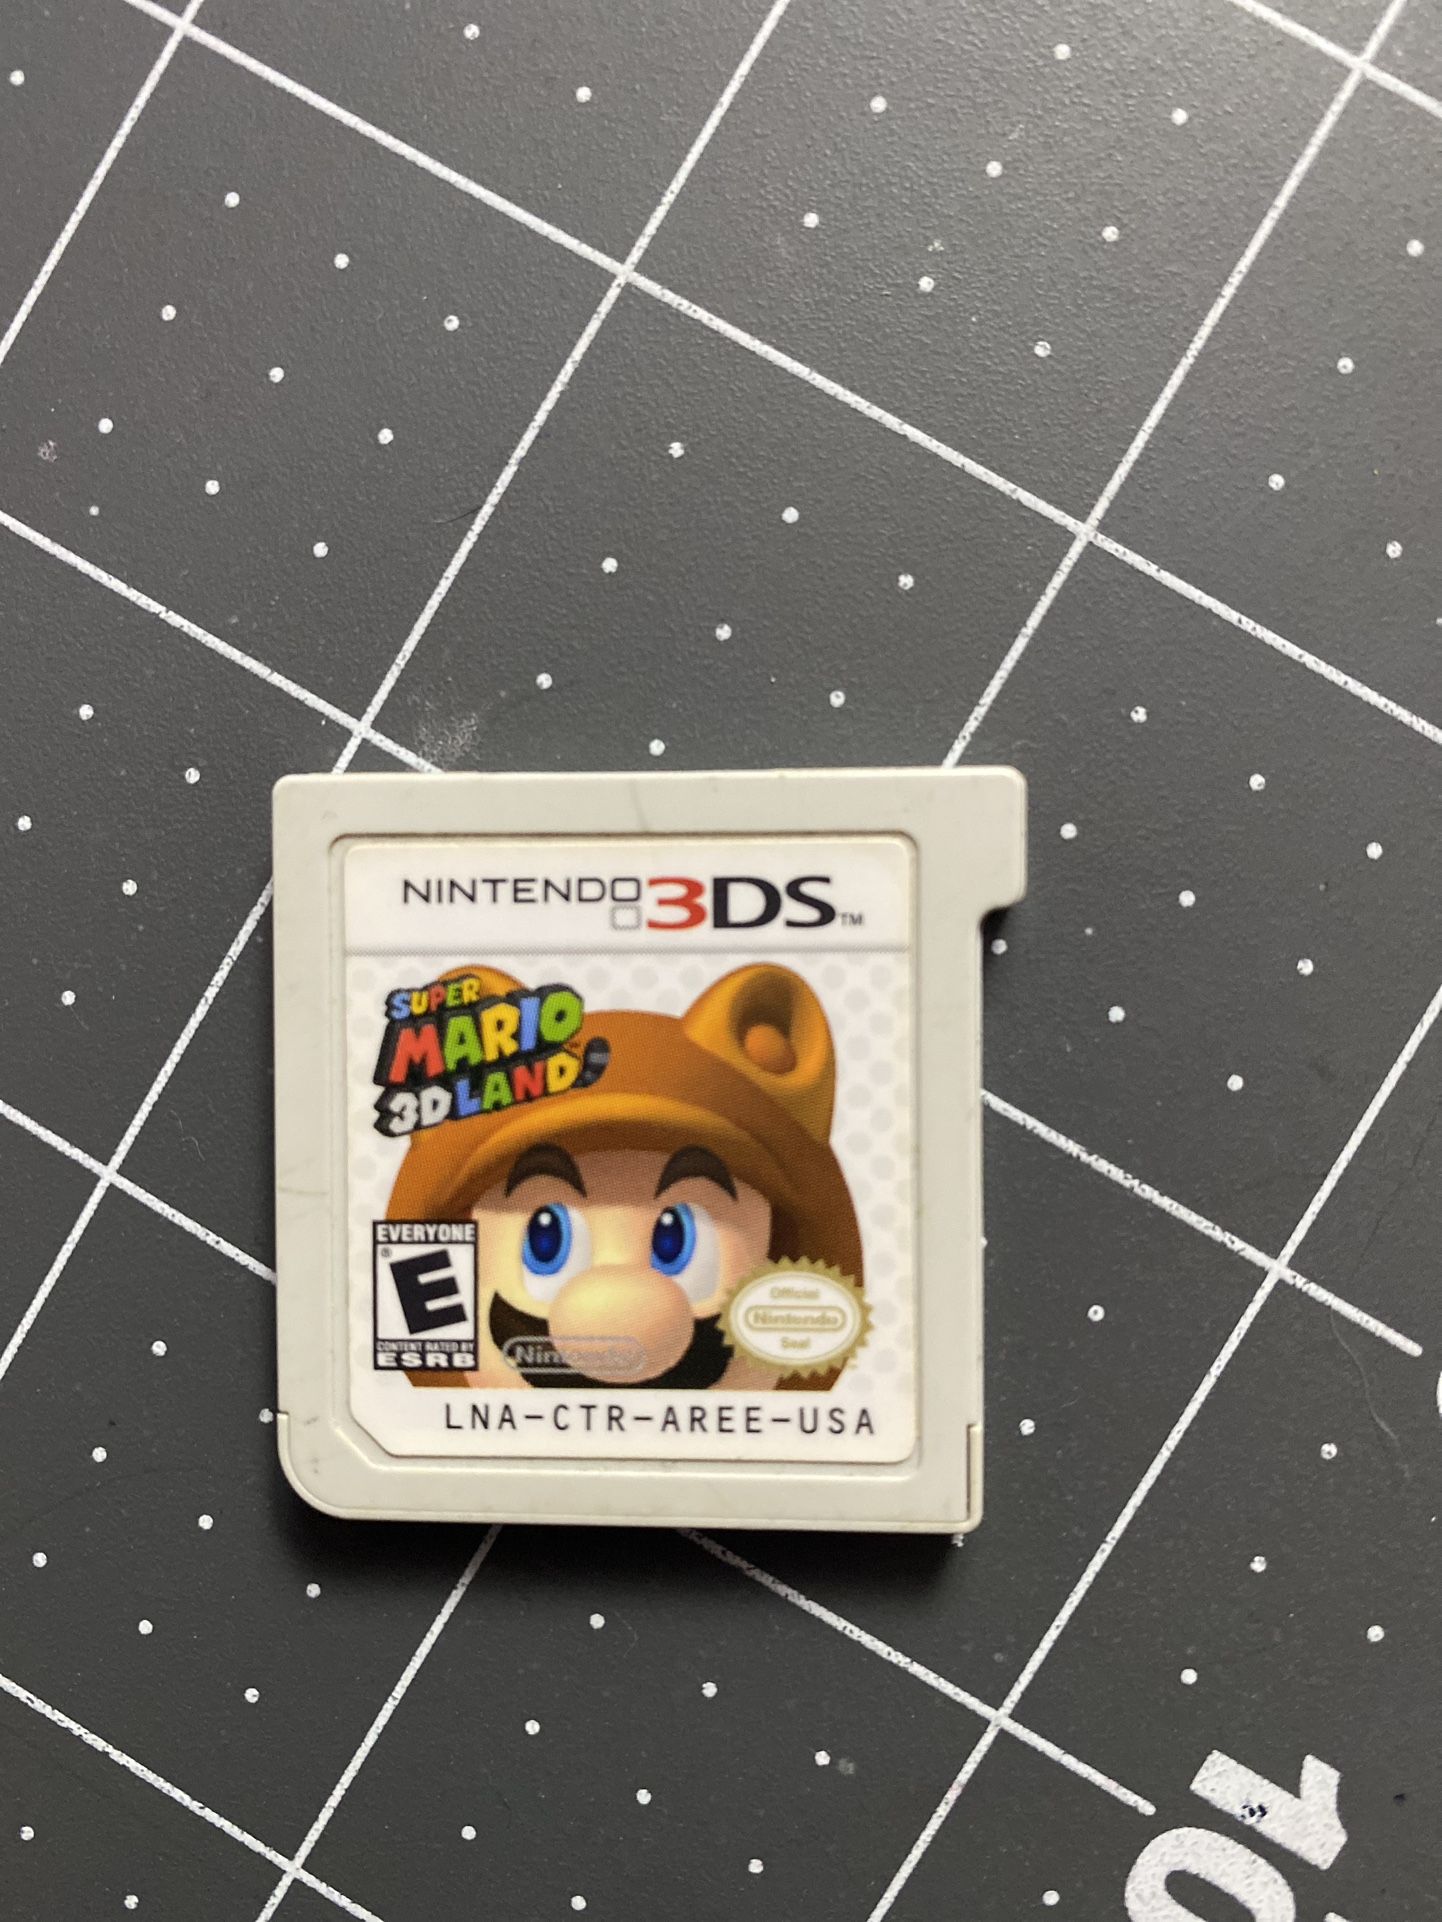 Súper Mario 3D Land 